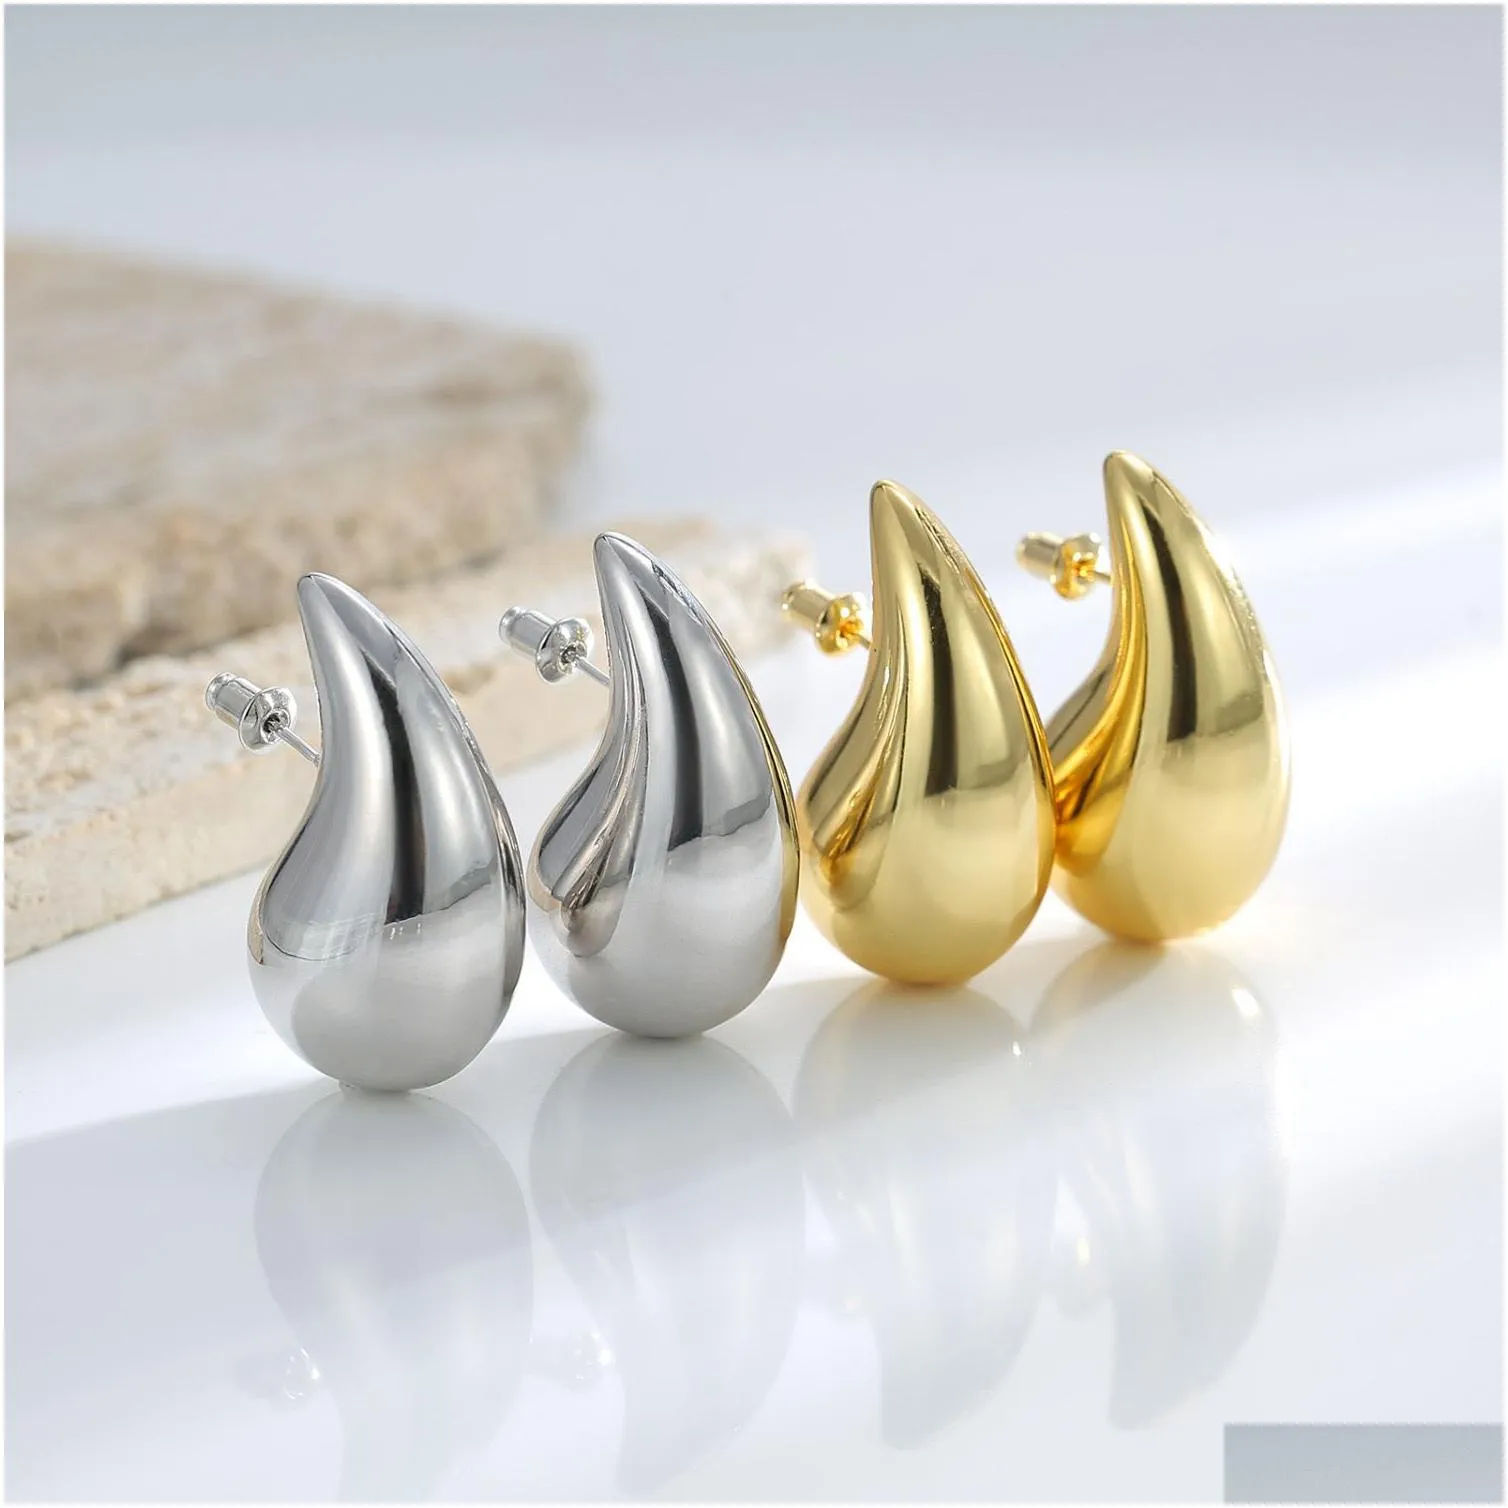 gold drops earrings designer for women stud earrings temperament ear jewelry